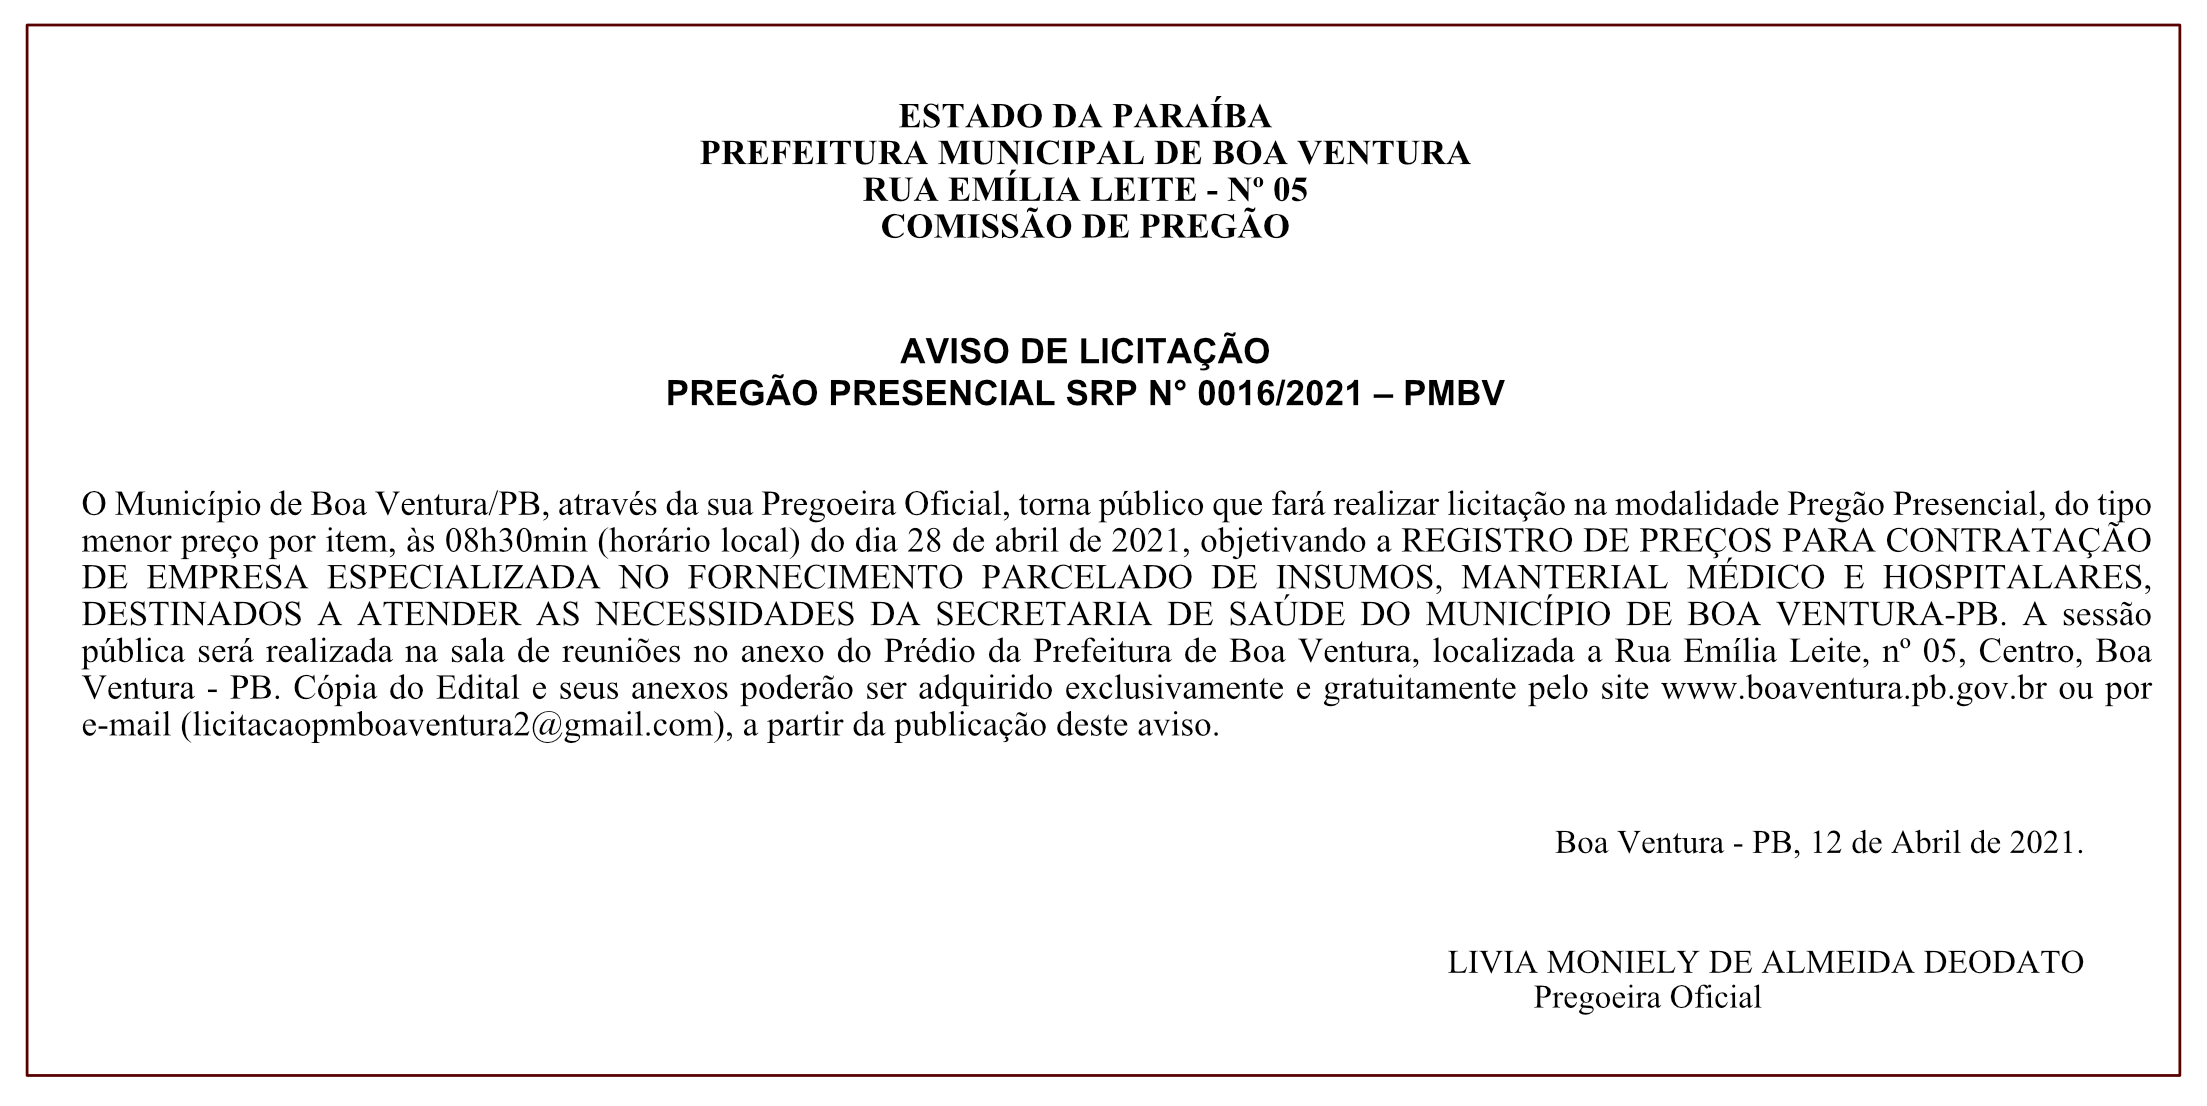 PREFEITURA MUNICIPAL DE BOA VENTURA – COMISSÃO DE PREGÃO – AVISO DE LICITAÇÃO – PREGÃO PRESENCIAL SRP N° 0016/2021